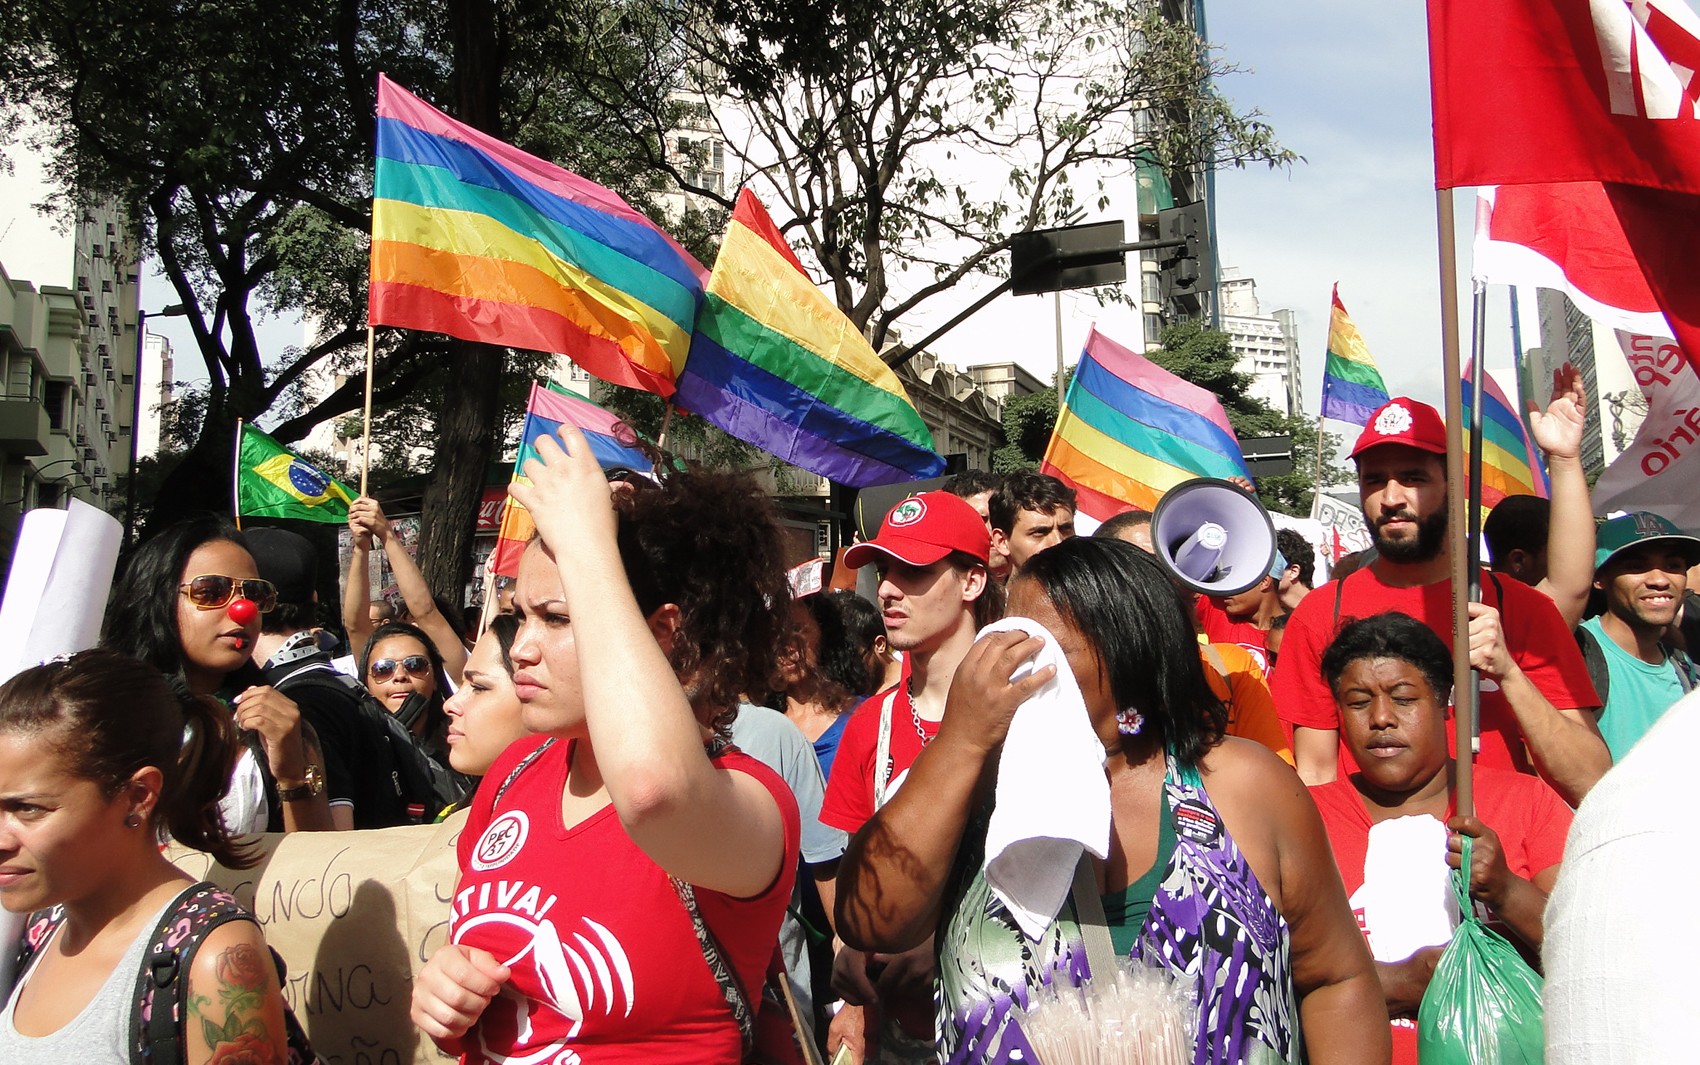 Bandeiras LGBT foram erguidas durante protesto. (Foto: Sara Antunes/G1)